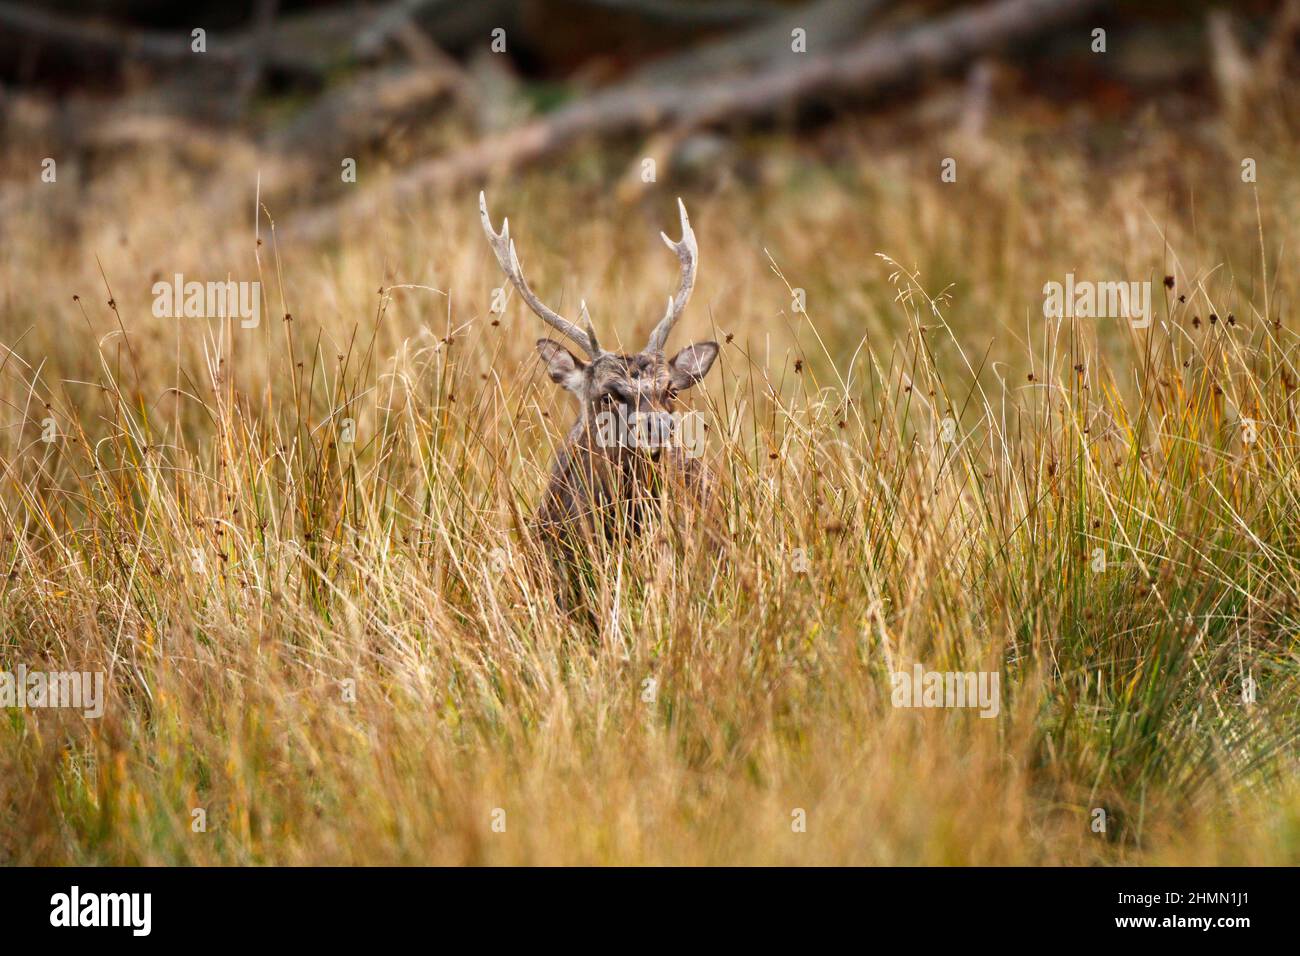 Ciervo de Sika, ciervo de Tame sika, ciervo de Tame (Cervus nippon), macho se encuentra entre la hierba alta, Alemania Foto de stock